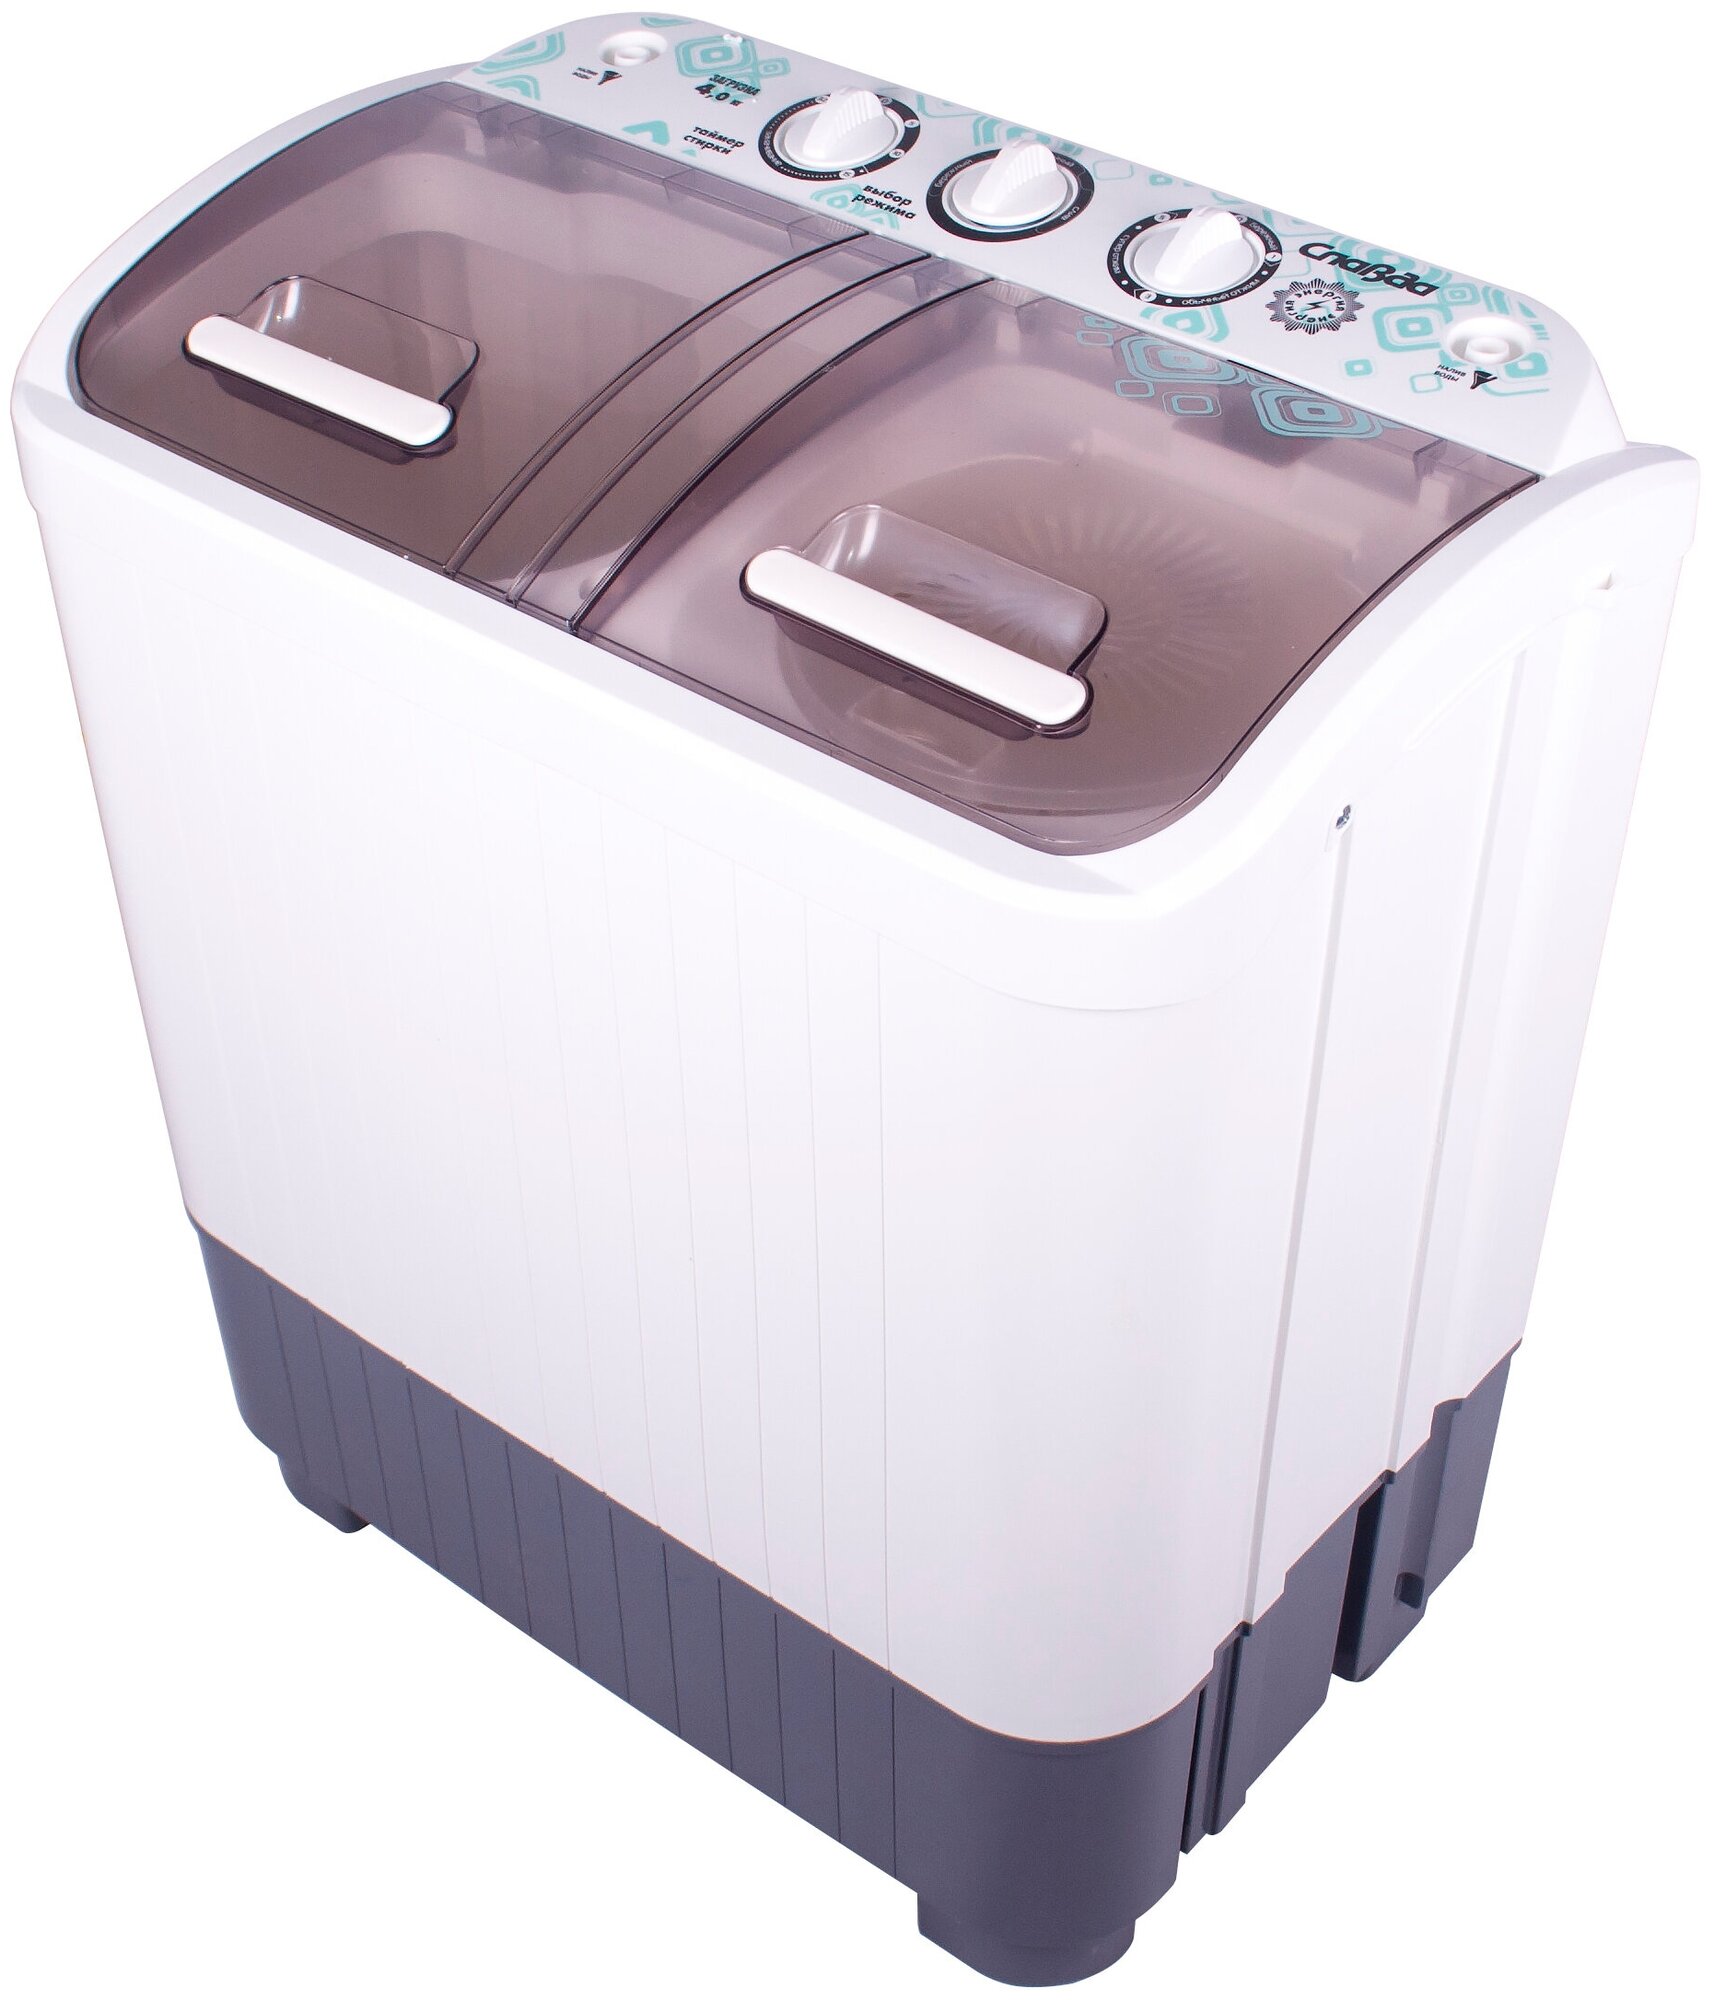 Активаторная стиральная машина Славда WS-40PET